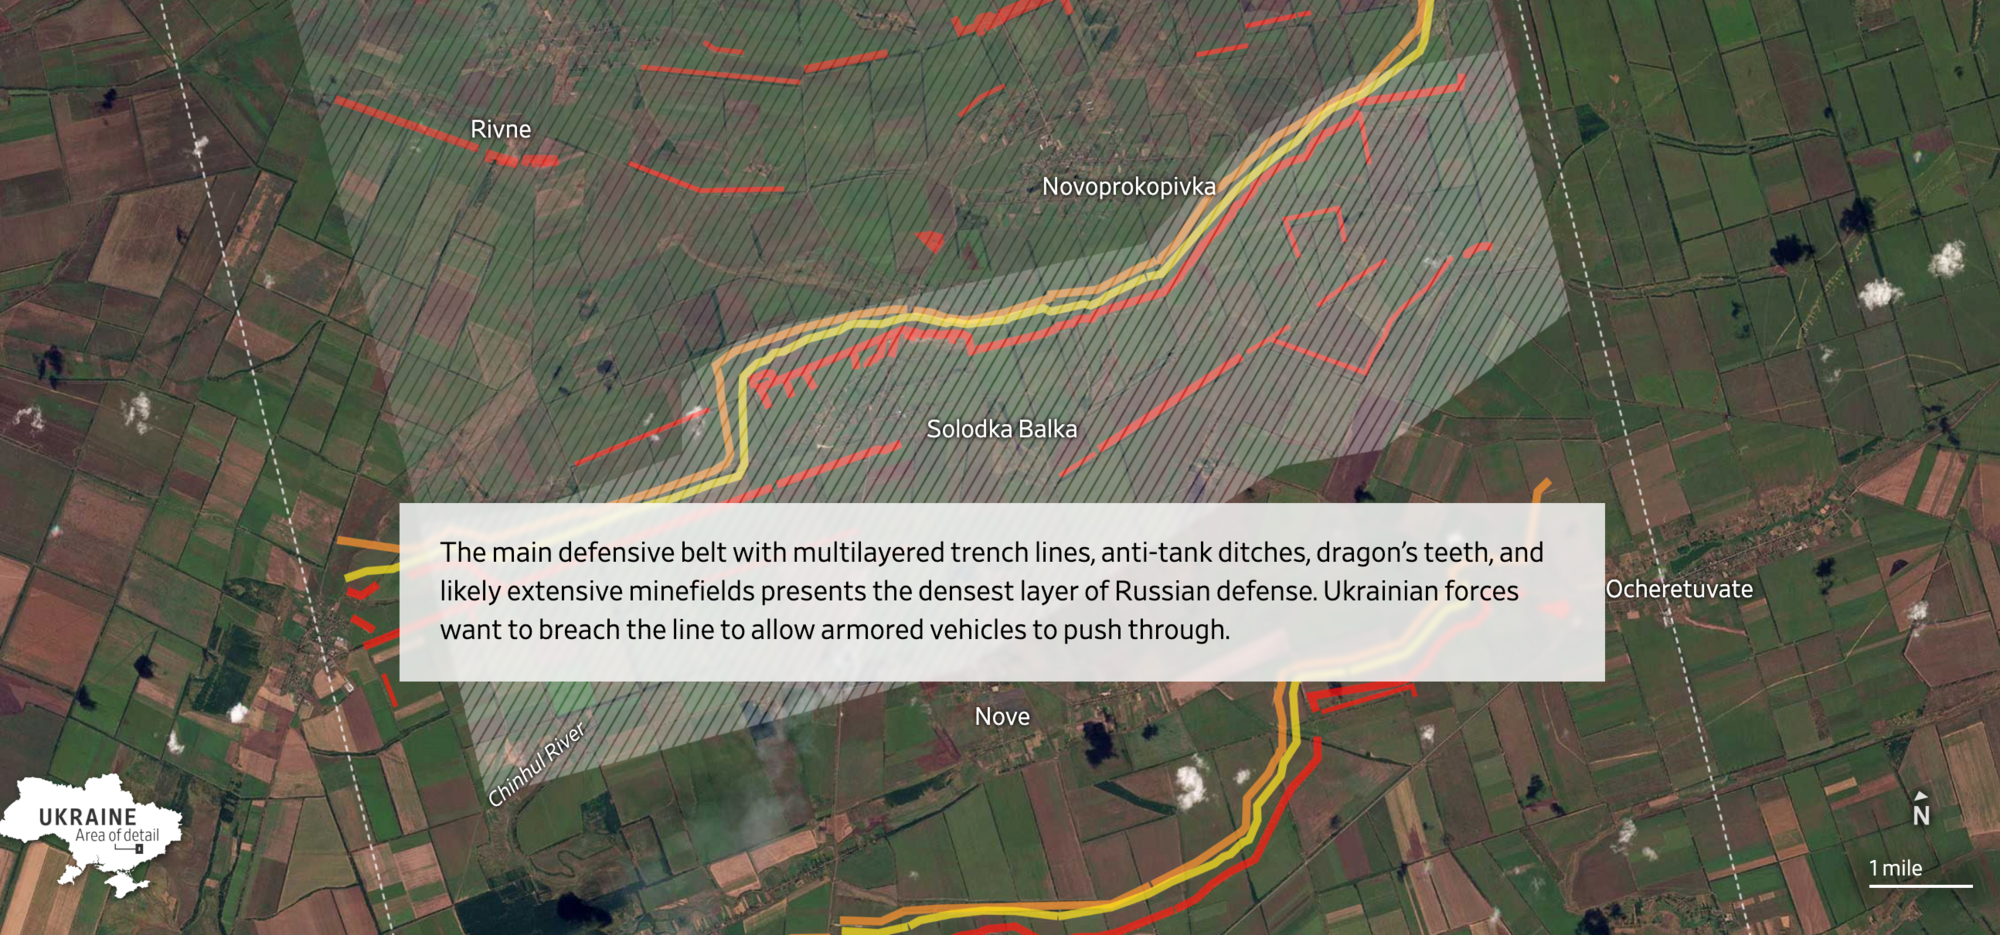 "Тепер зрозуміло, чому контрнаступ ЗСУ такий повільний": західні аналітики візуалізували російські укріплення на півдні України. Схема